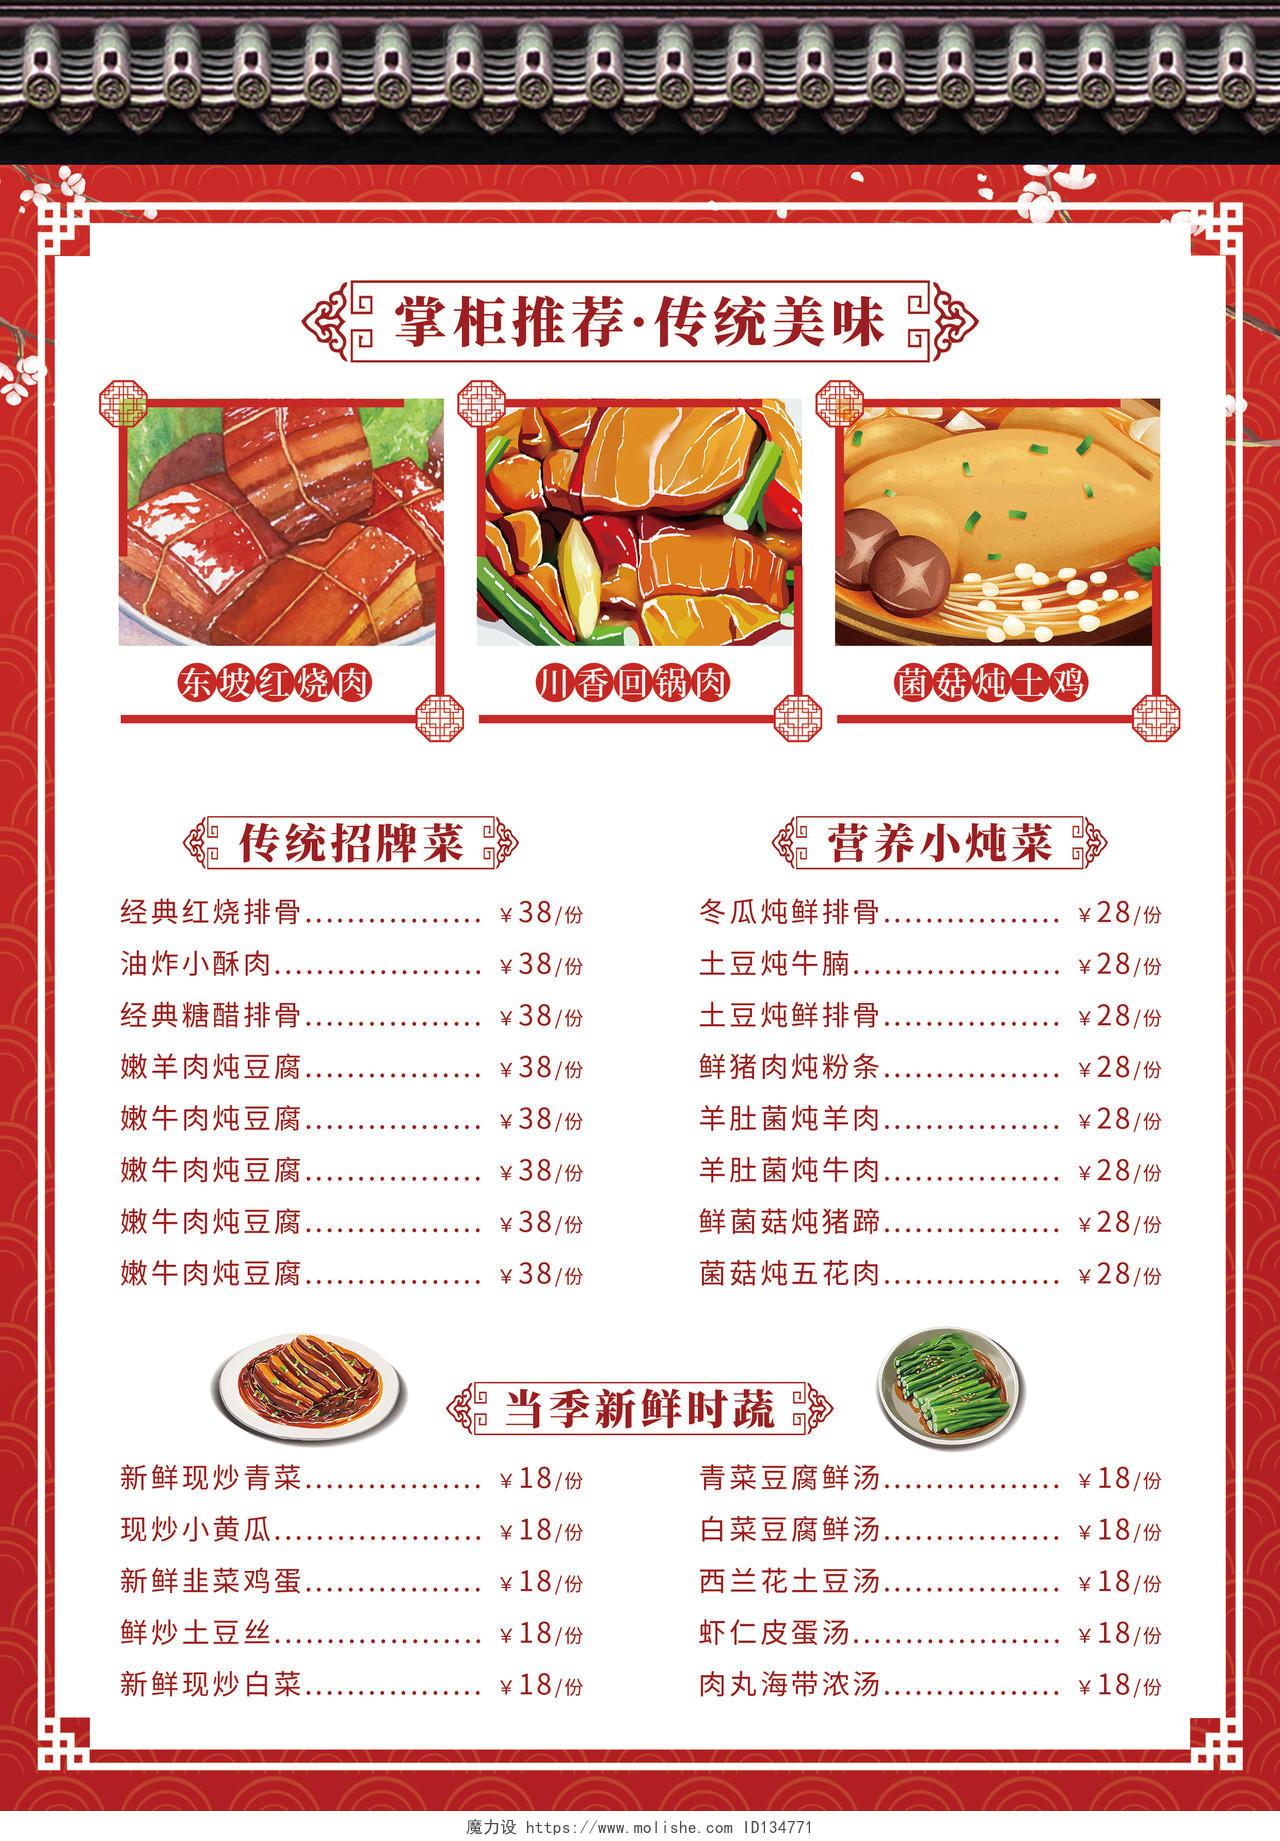 红色简洁传统中国风中餐厅饭馆餐馆宣传单